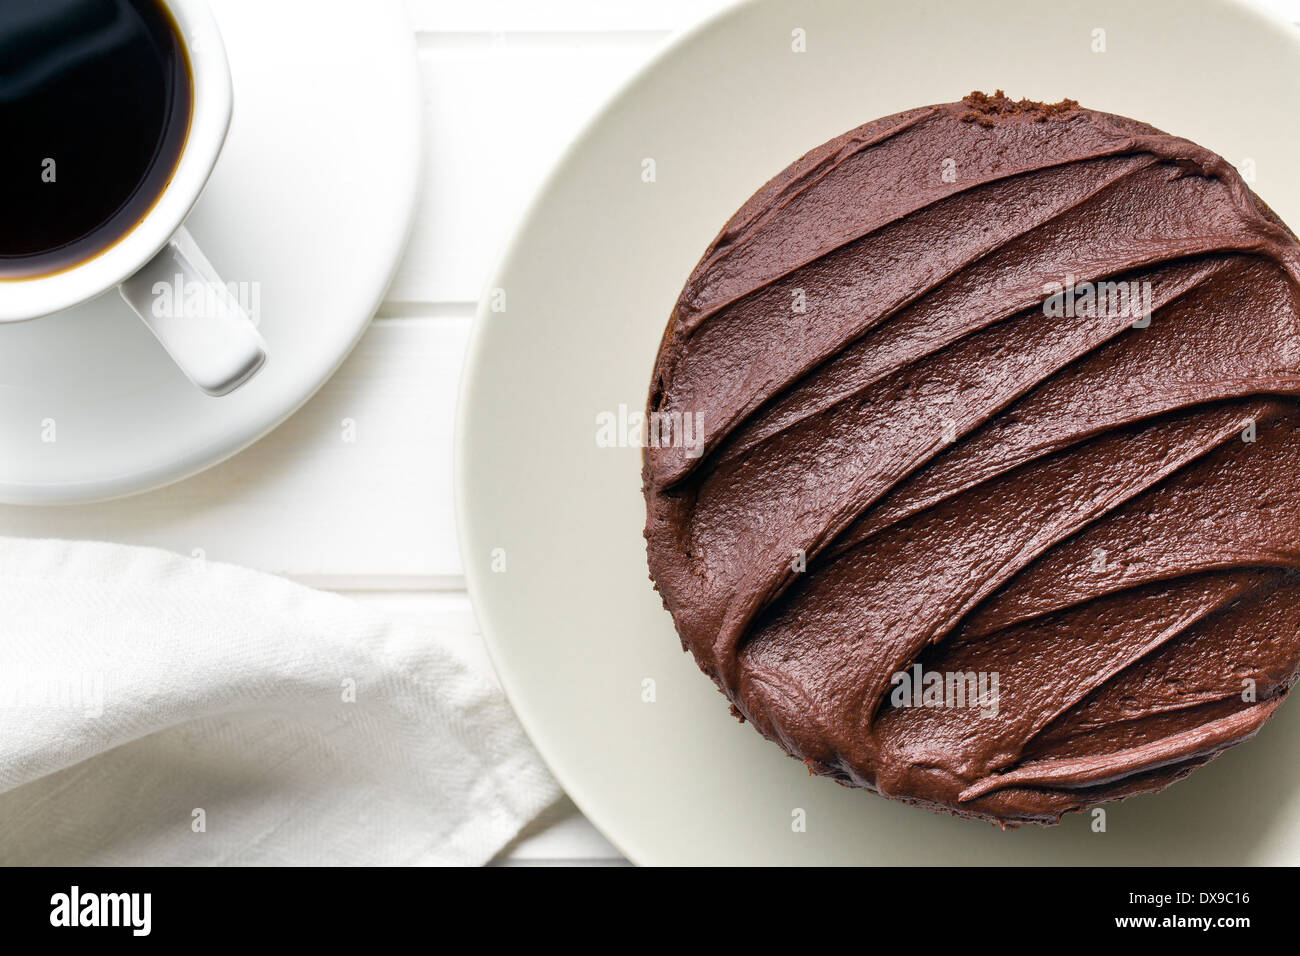 Vue de dessus du gâteau au chocolat noir Banque D'Images